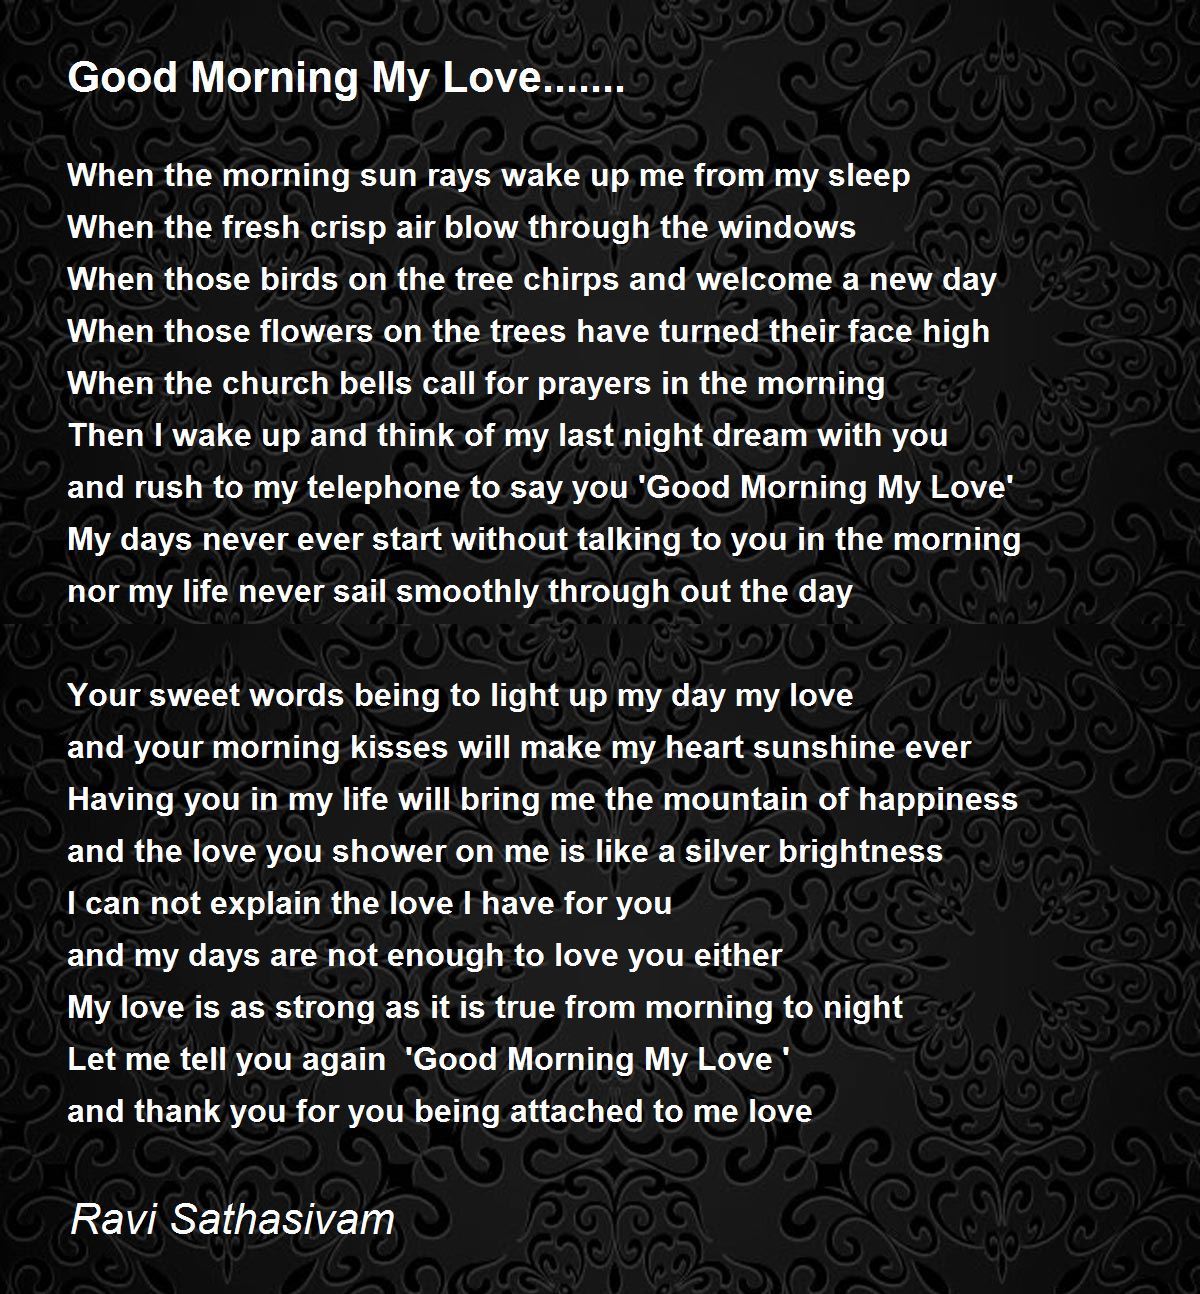 Good Morning My Love. Poem by Ravi Sathasivam - Poem 